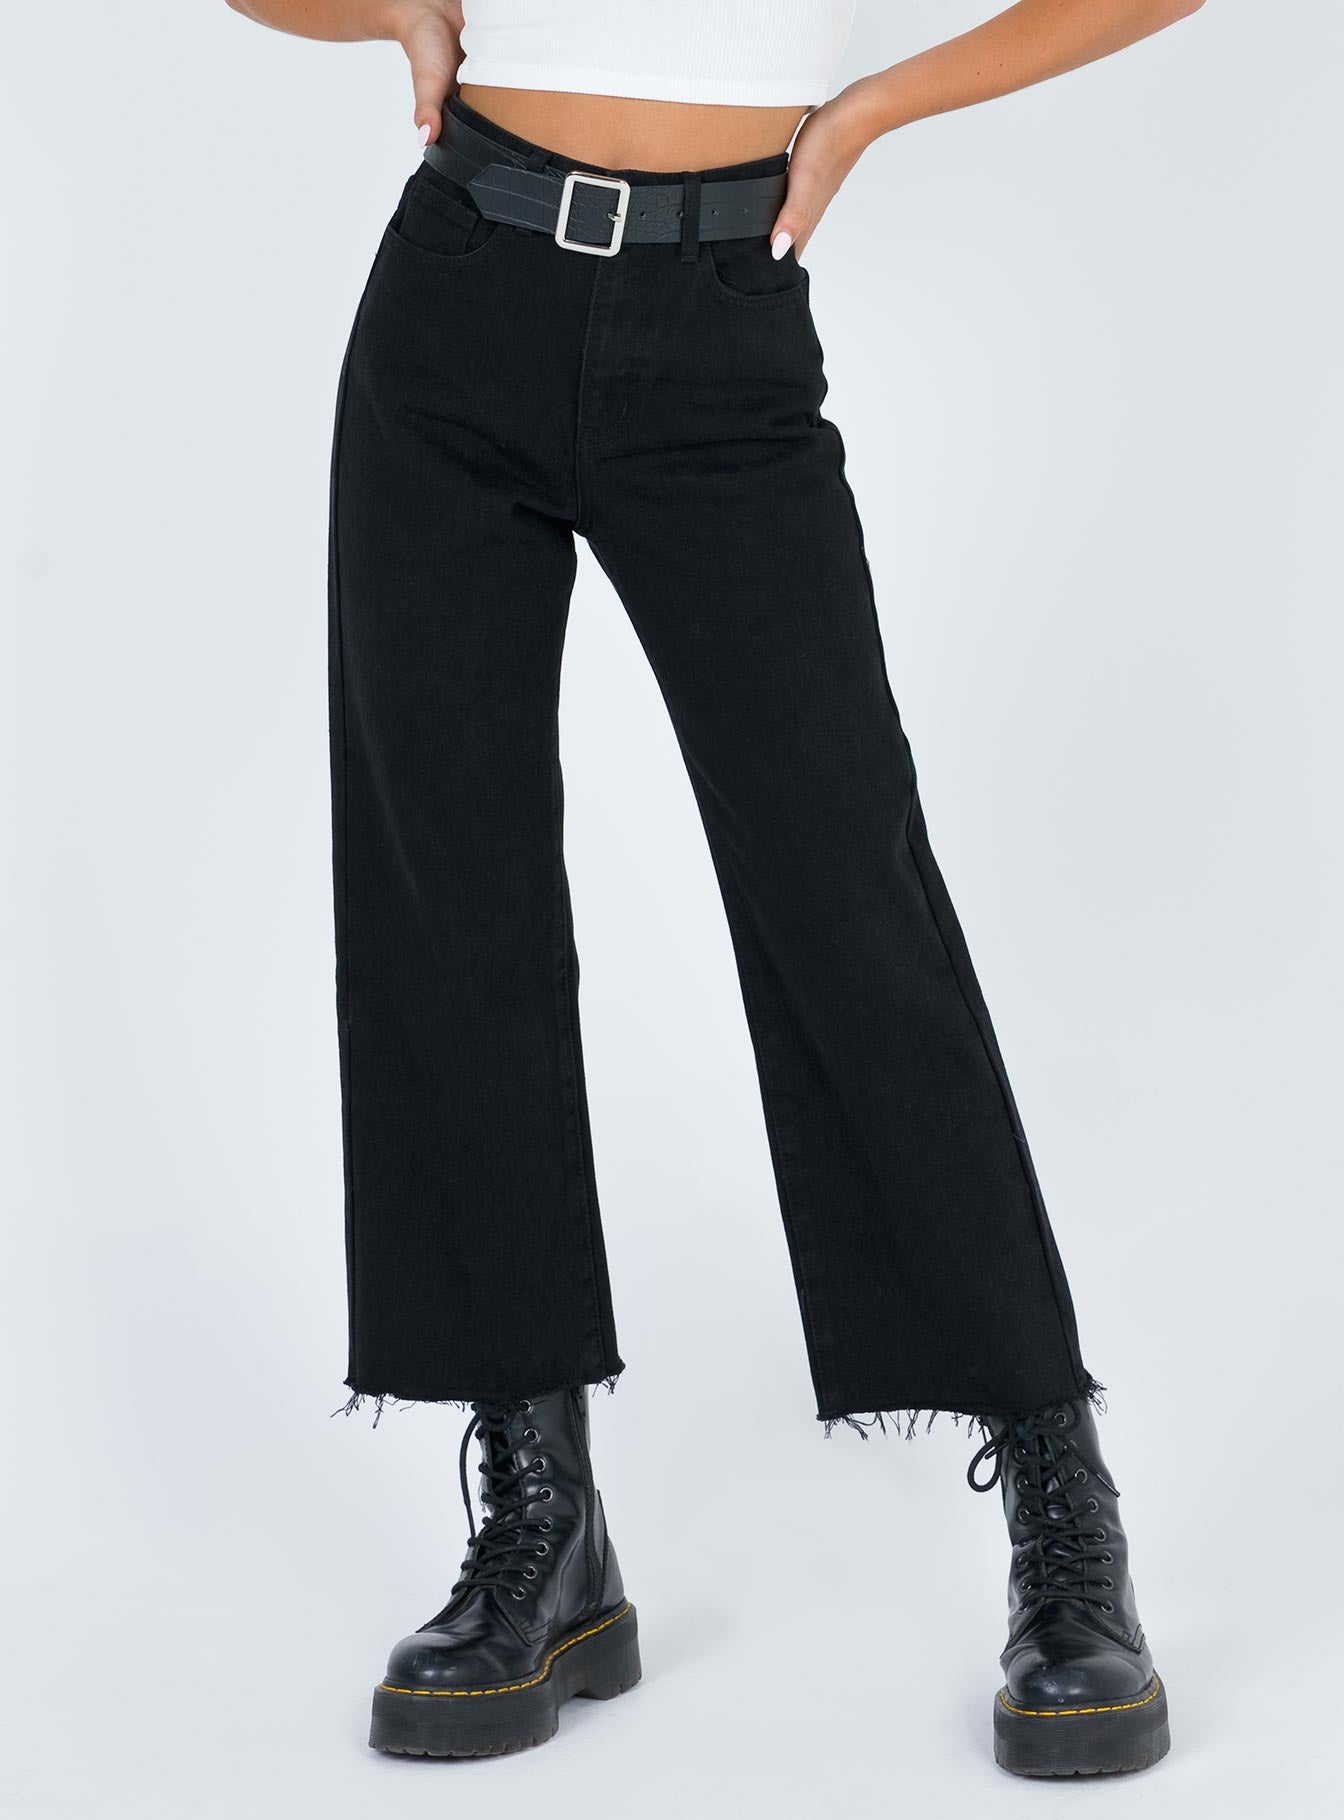 black denim capri jeans